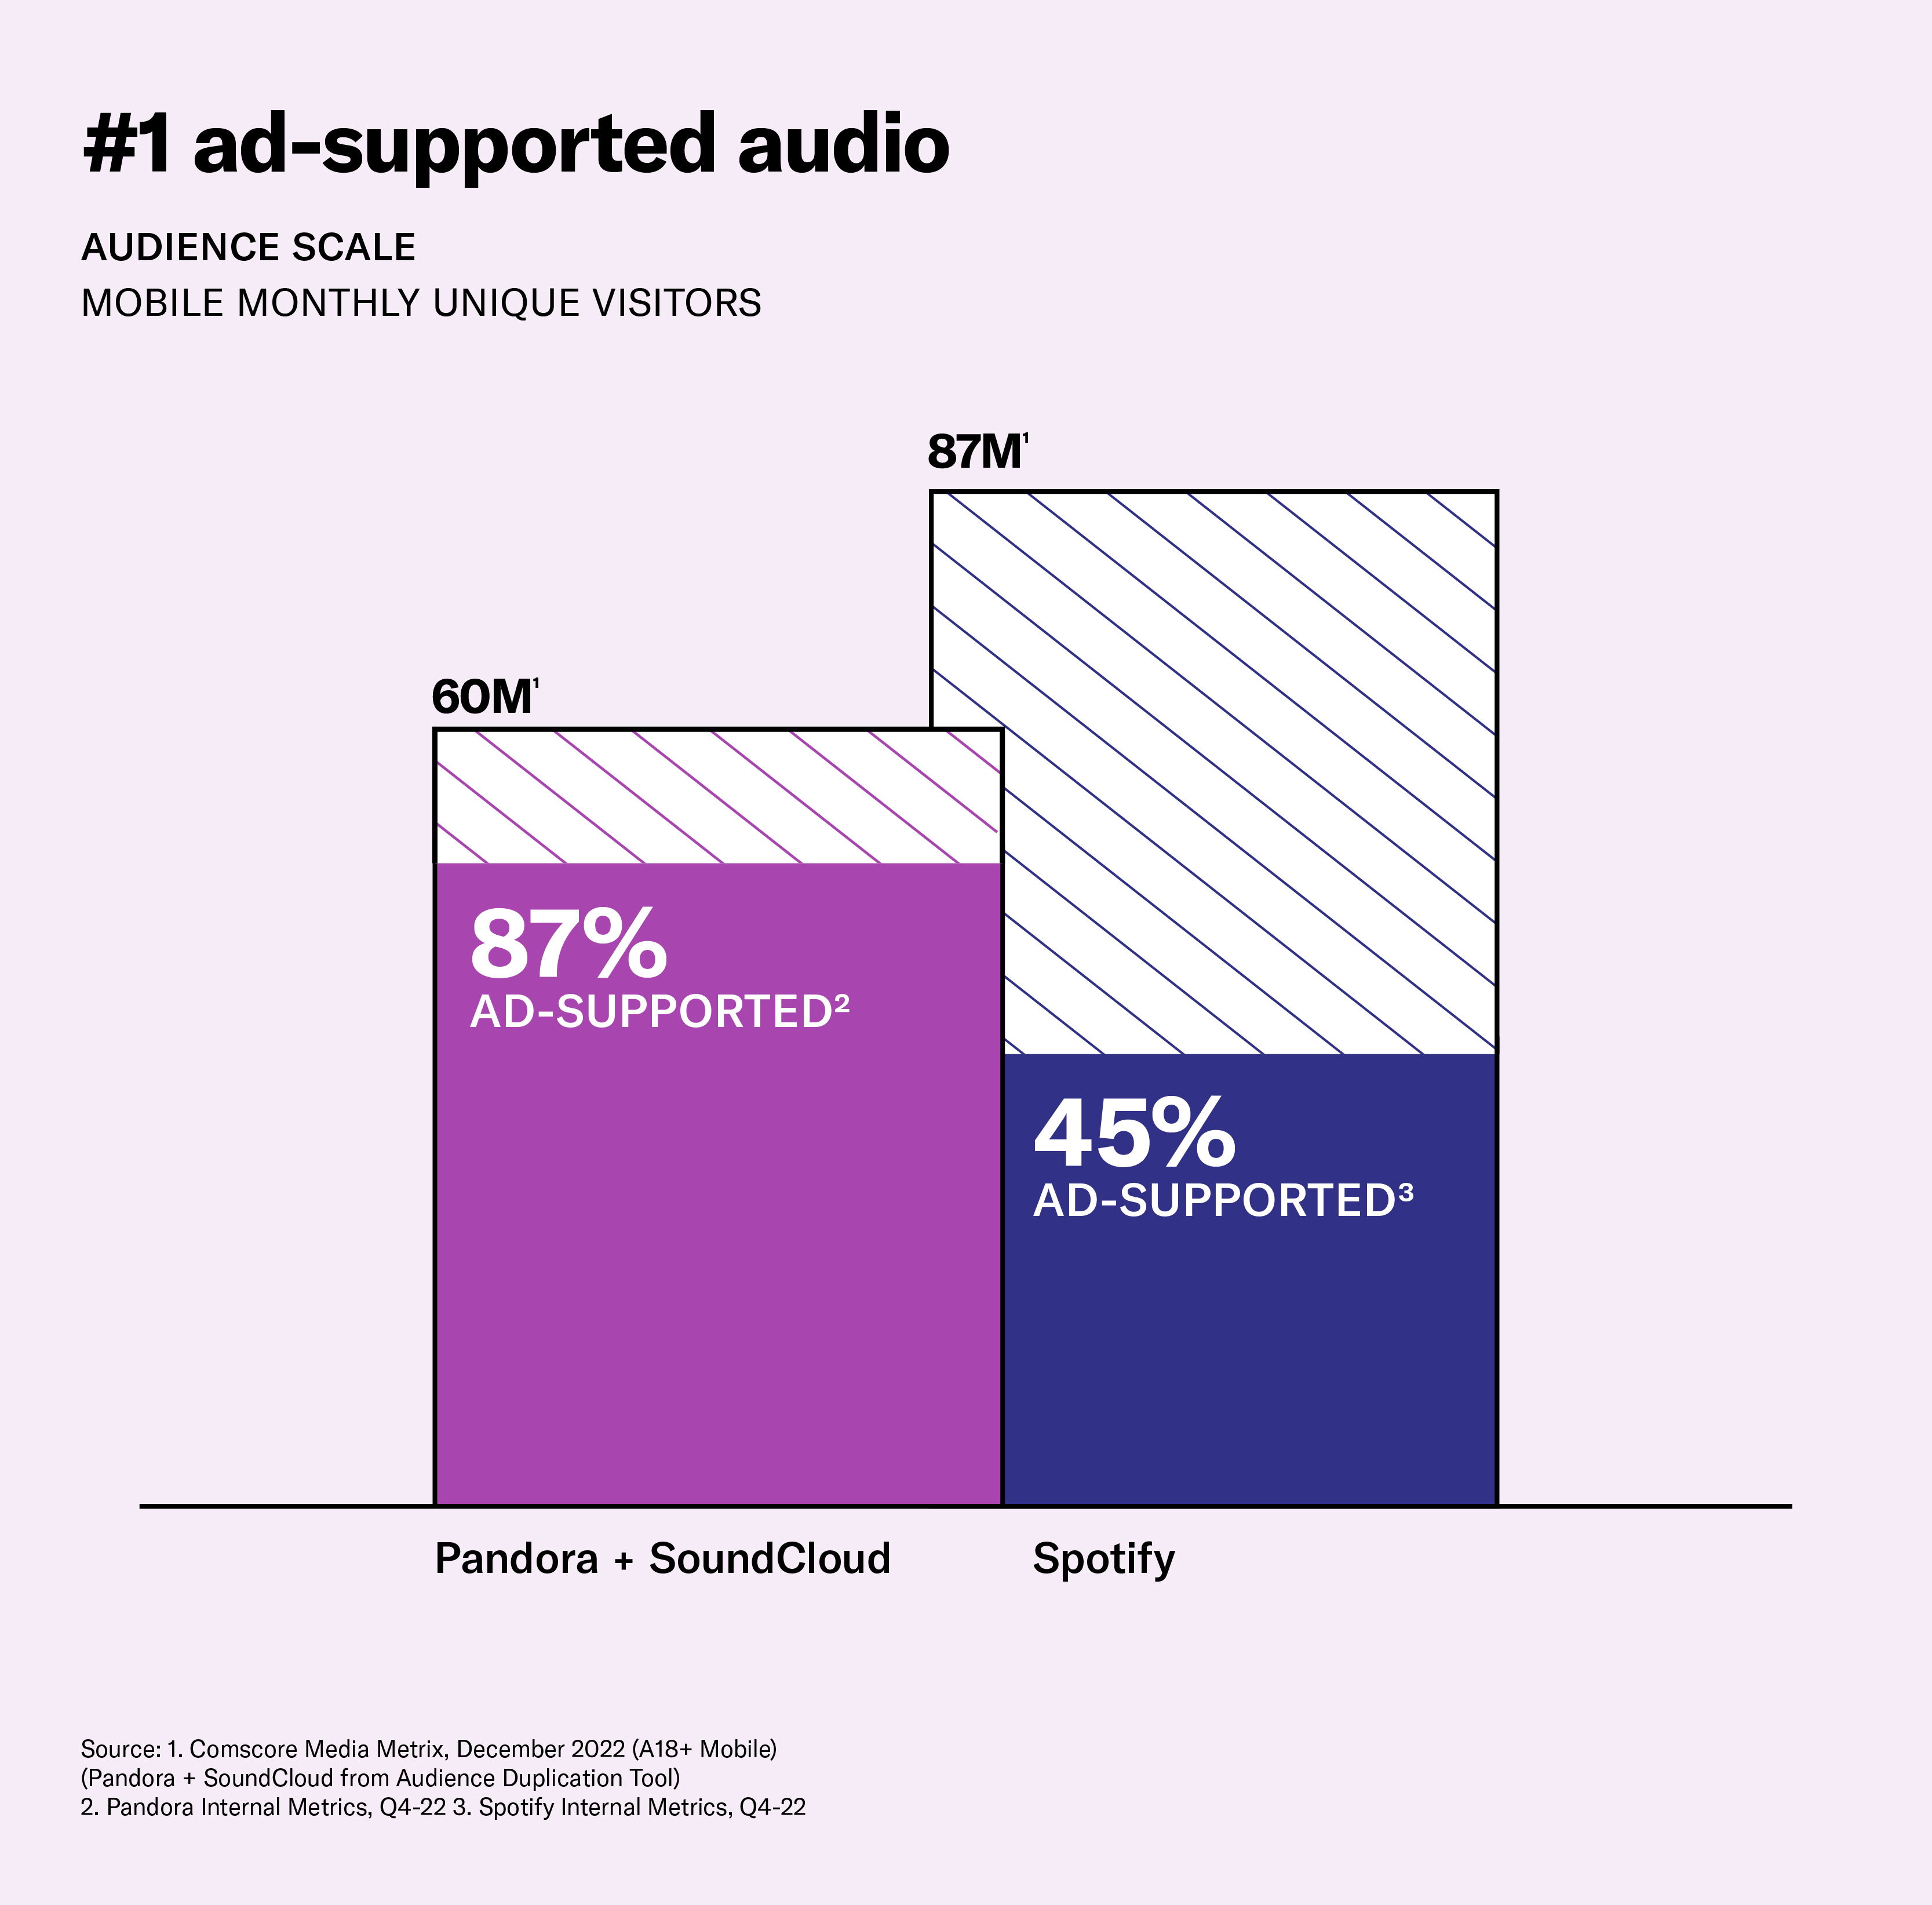 Pandora + SoundCloud has the #1 Addressable Audience